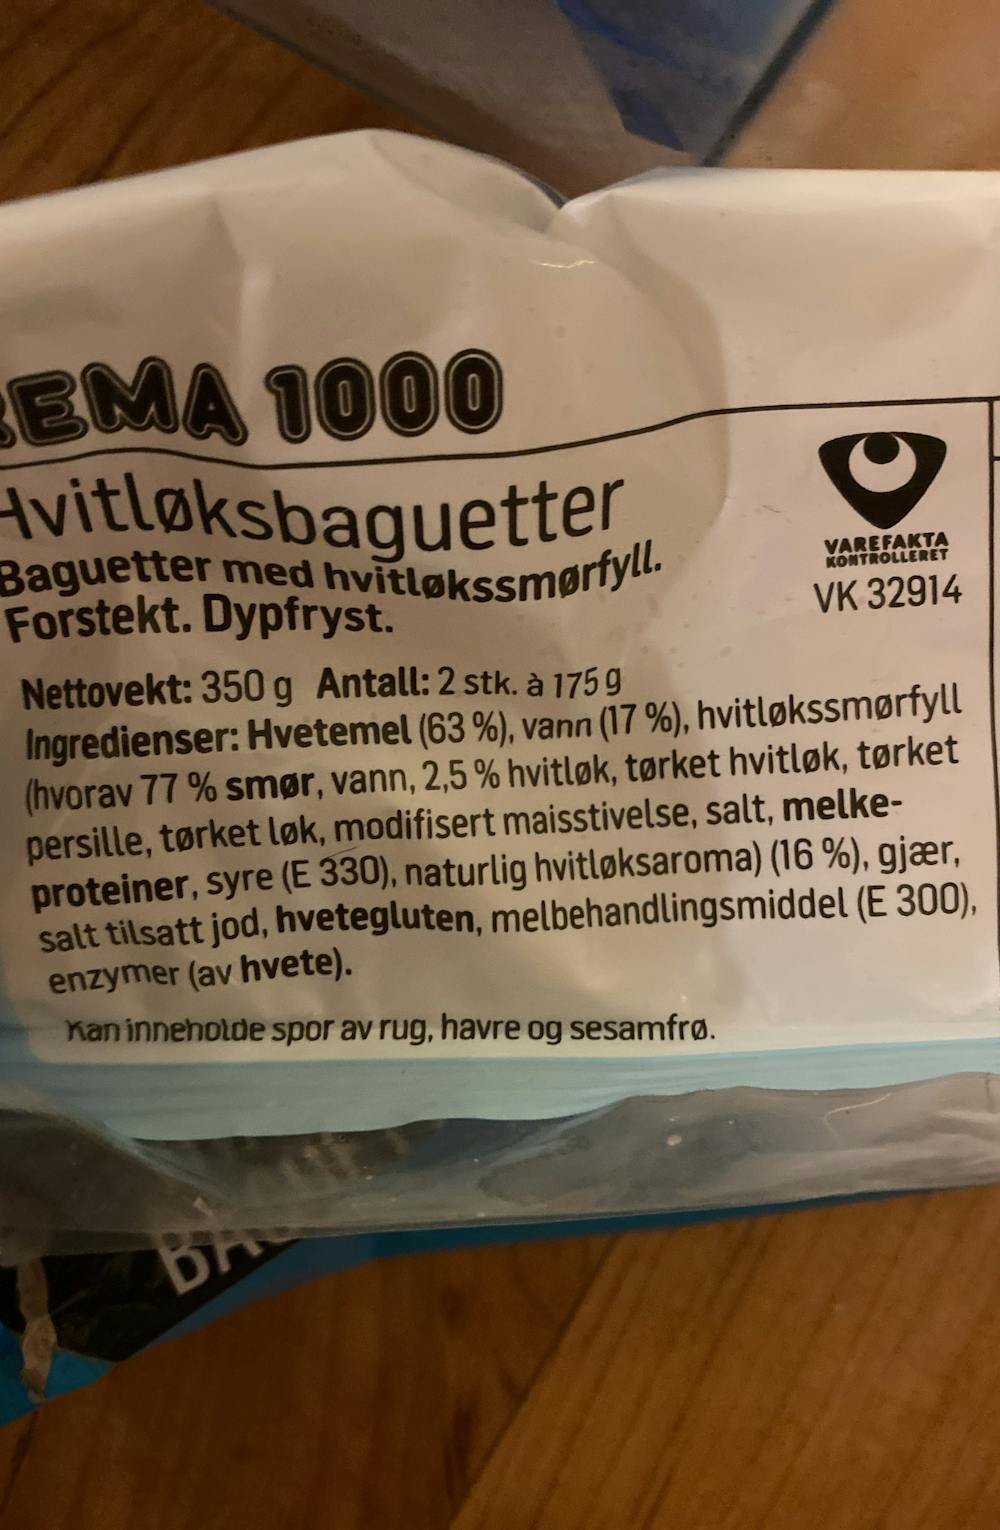 Ingredienslisten til Hvitløksbaguetter, Rema 1000